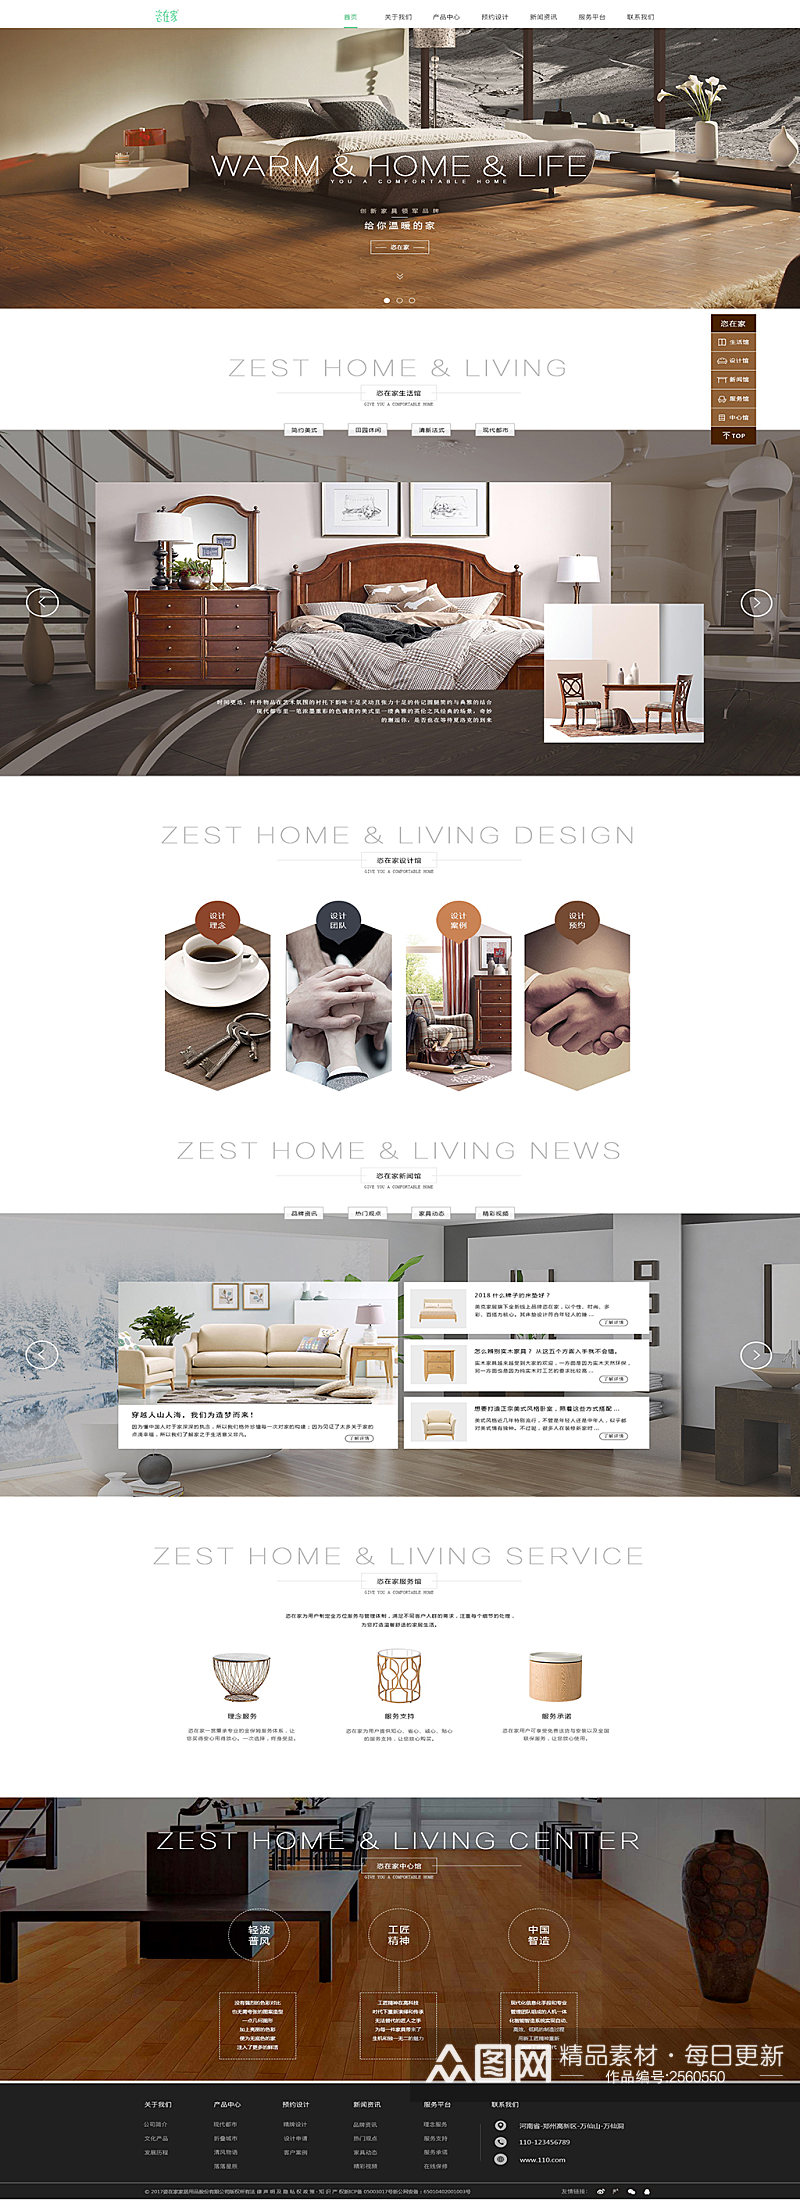 创意简约家装家居展示网页设计素材